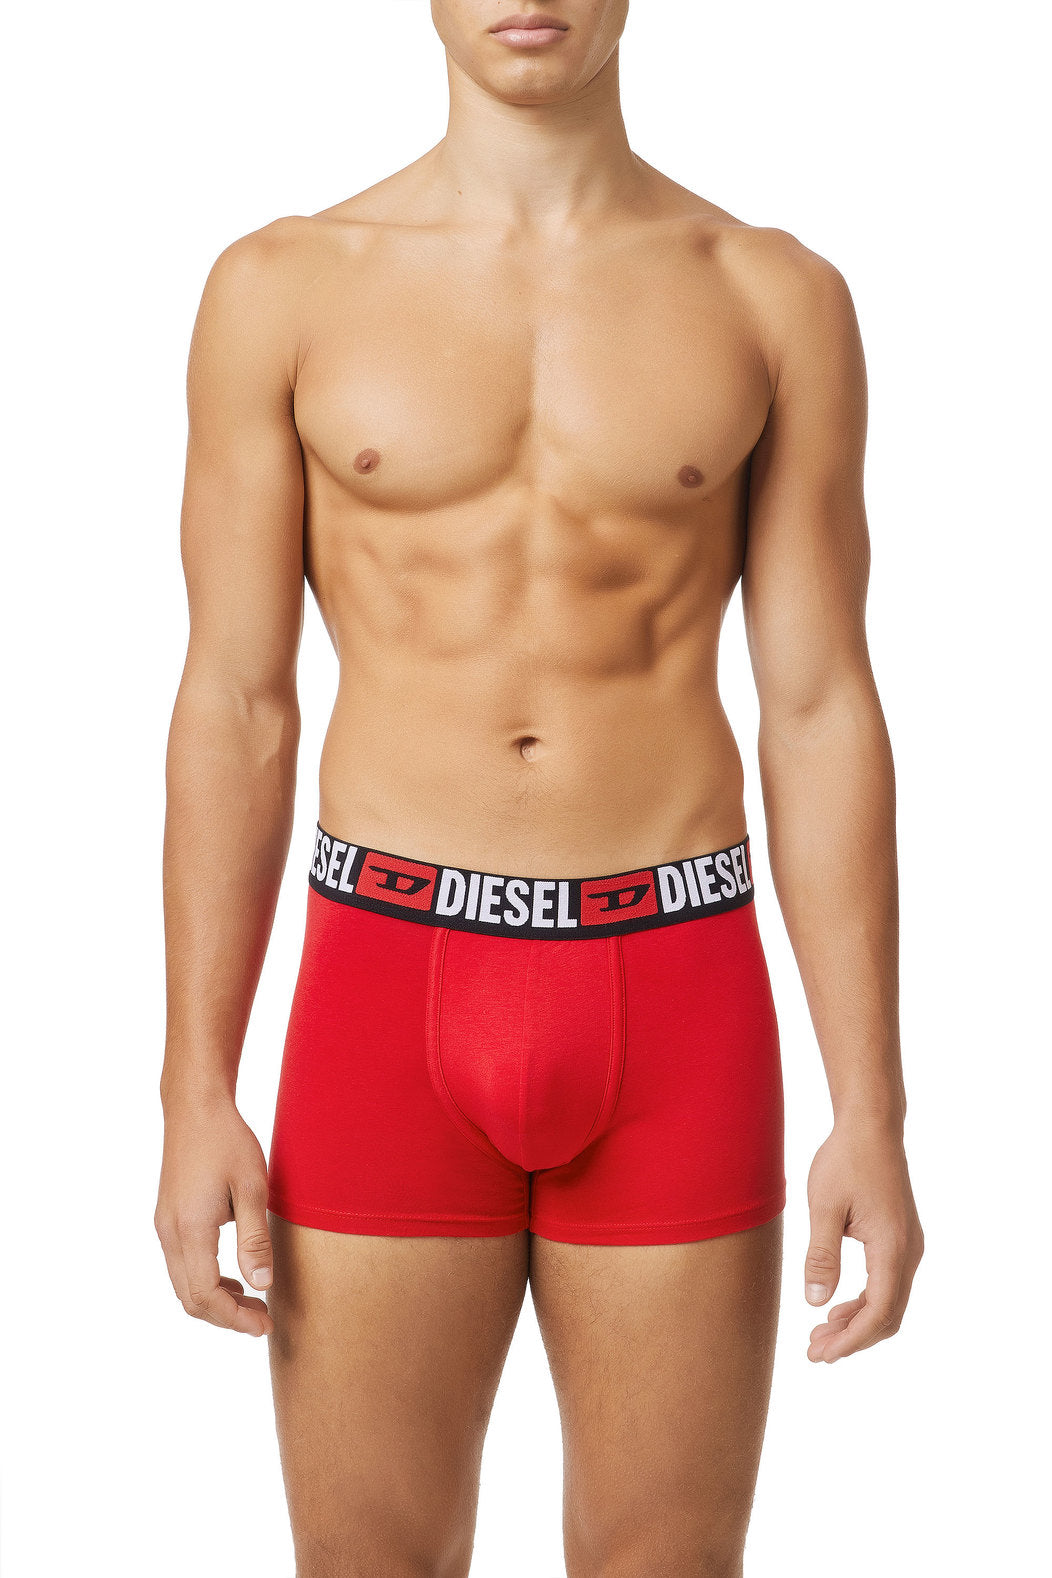 Diesel Damien Three Pack Underwear | Colours